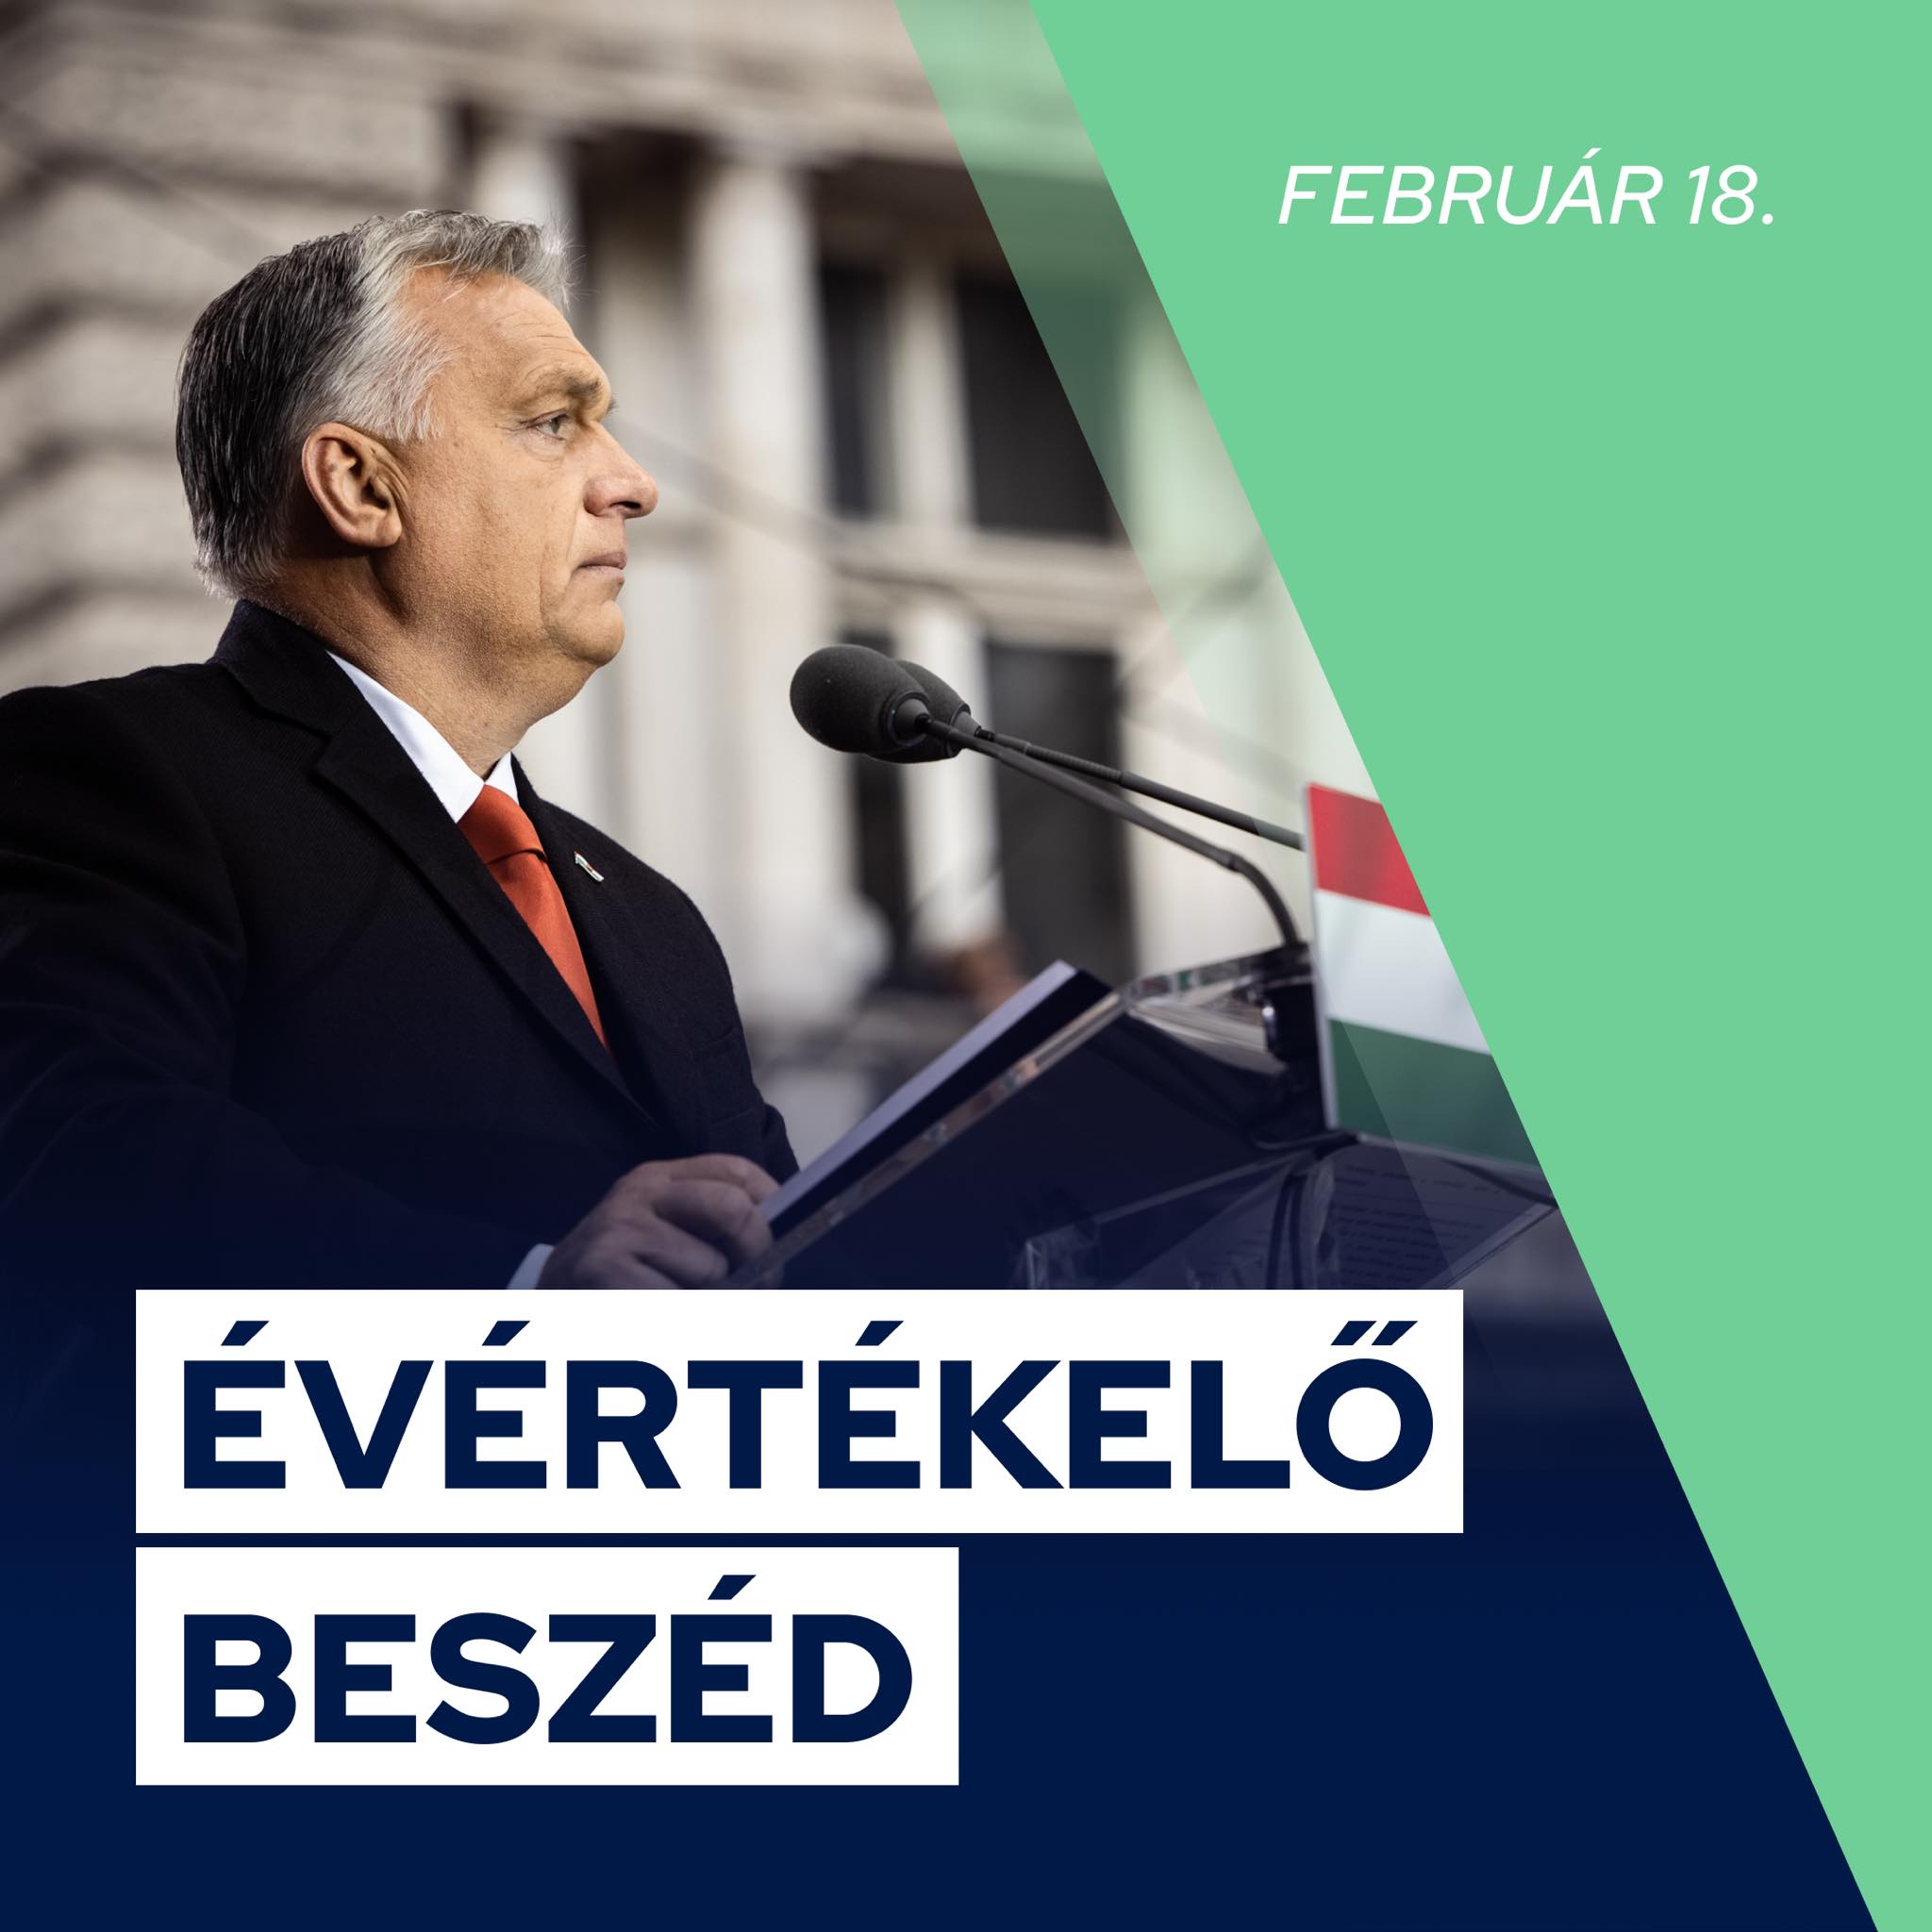 Orbán Viktor miniszterelnök évértékelő beszéde február 18-án, szombaton 15 órakor kezdődik! Itt is tudja élőben követni: https://youtube.com/@1orbanviktor